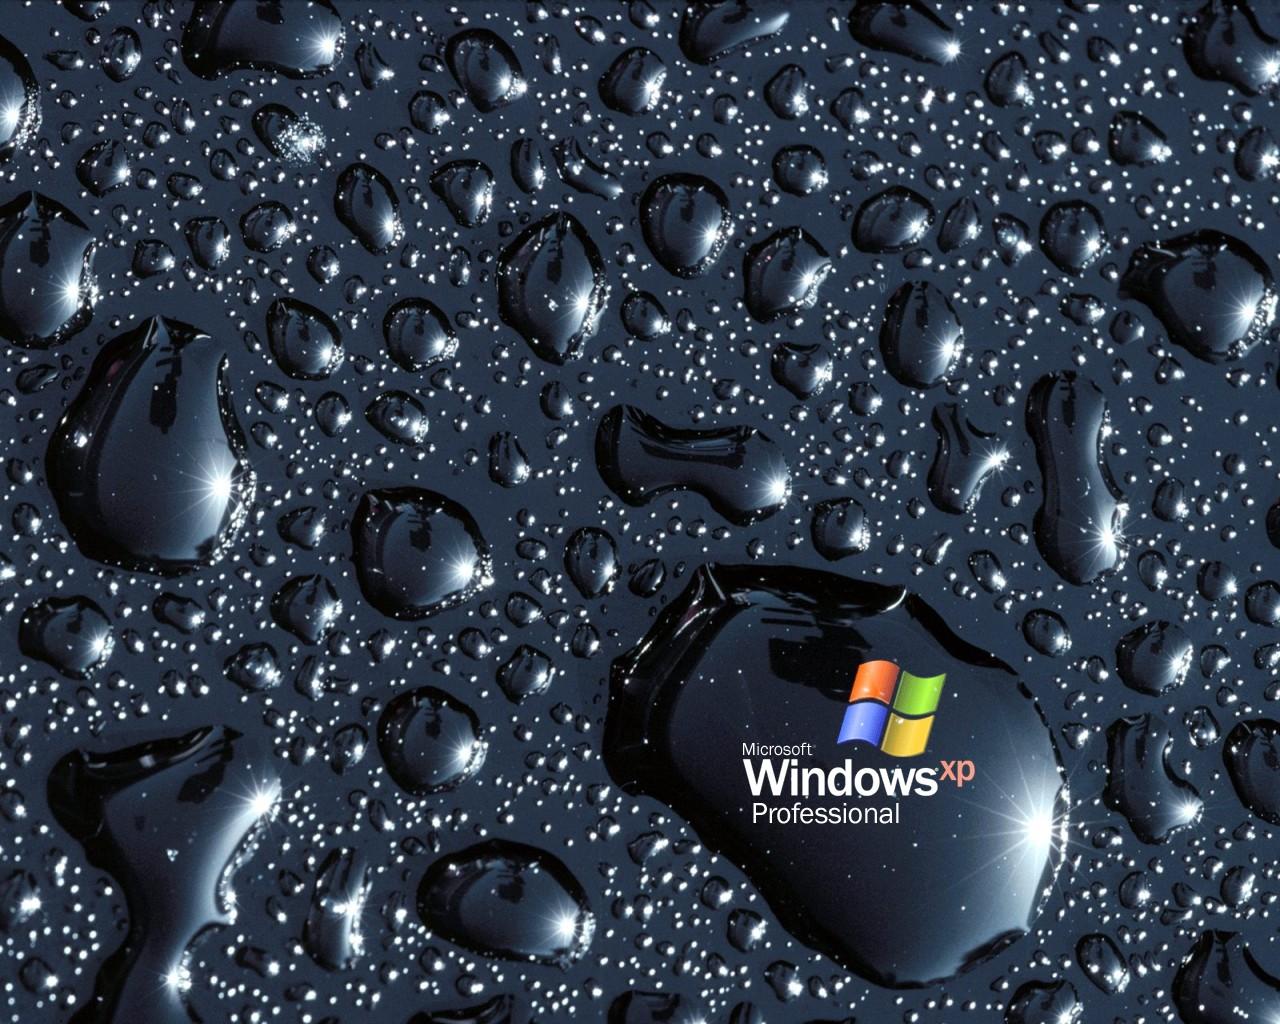 Nếu bạn là một fan hâm mộ của Microsoft, hình nền Microsoft từ WallpaperSafari sẽ giúp tăng thêm không khí phấn khích trong quá trình sử dụng máy tính của bạn. Với sự đa dạng về chủ đề và màu sắc, bạn chắc chắn sẽ tìm thấy hình ảnh đẹp và phù hợp nhất với mình.